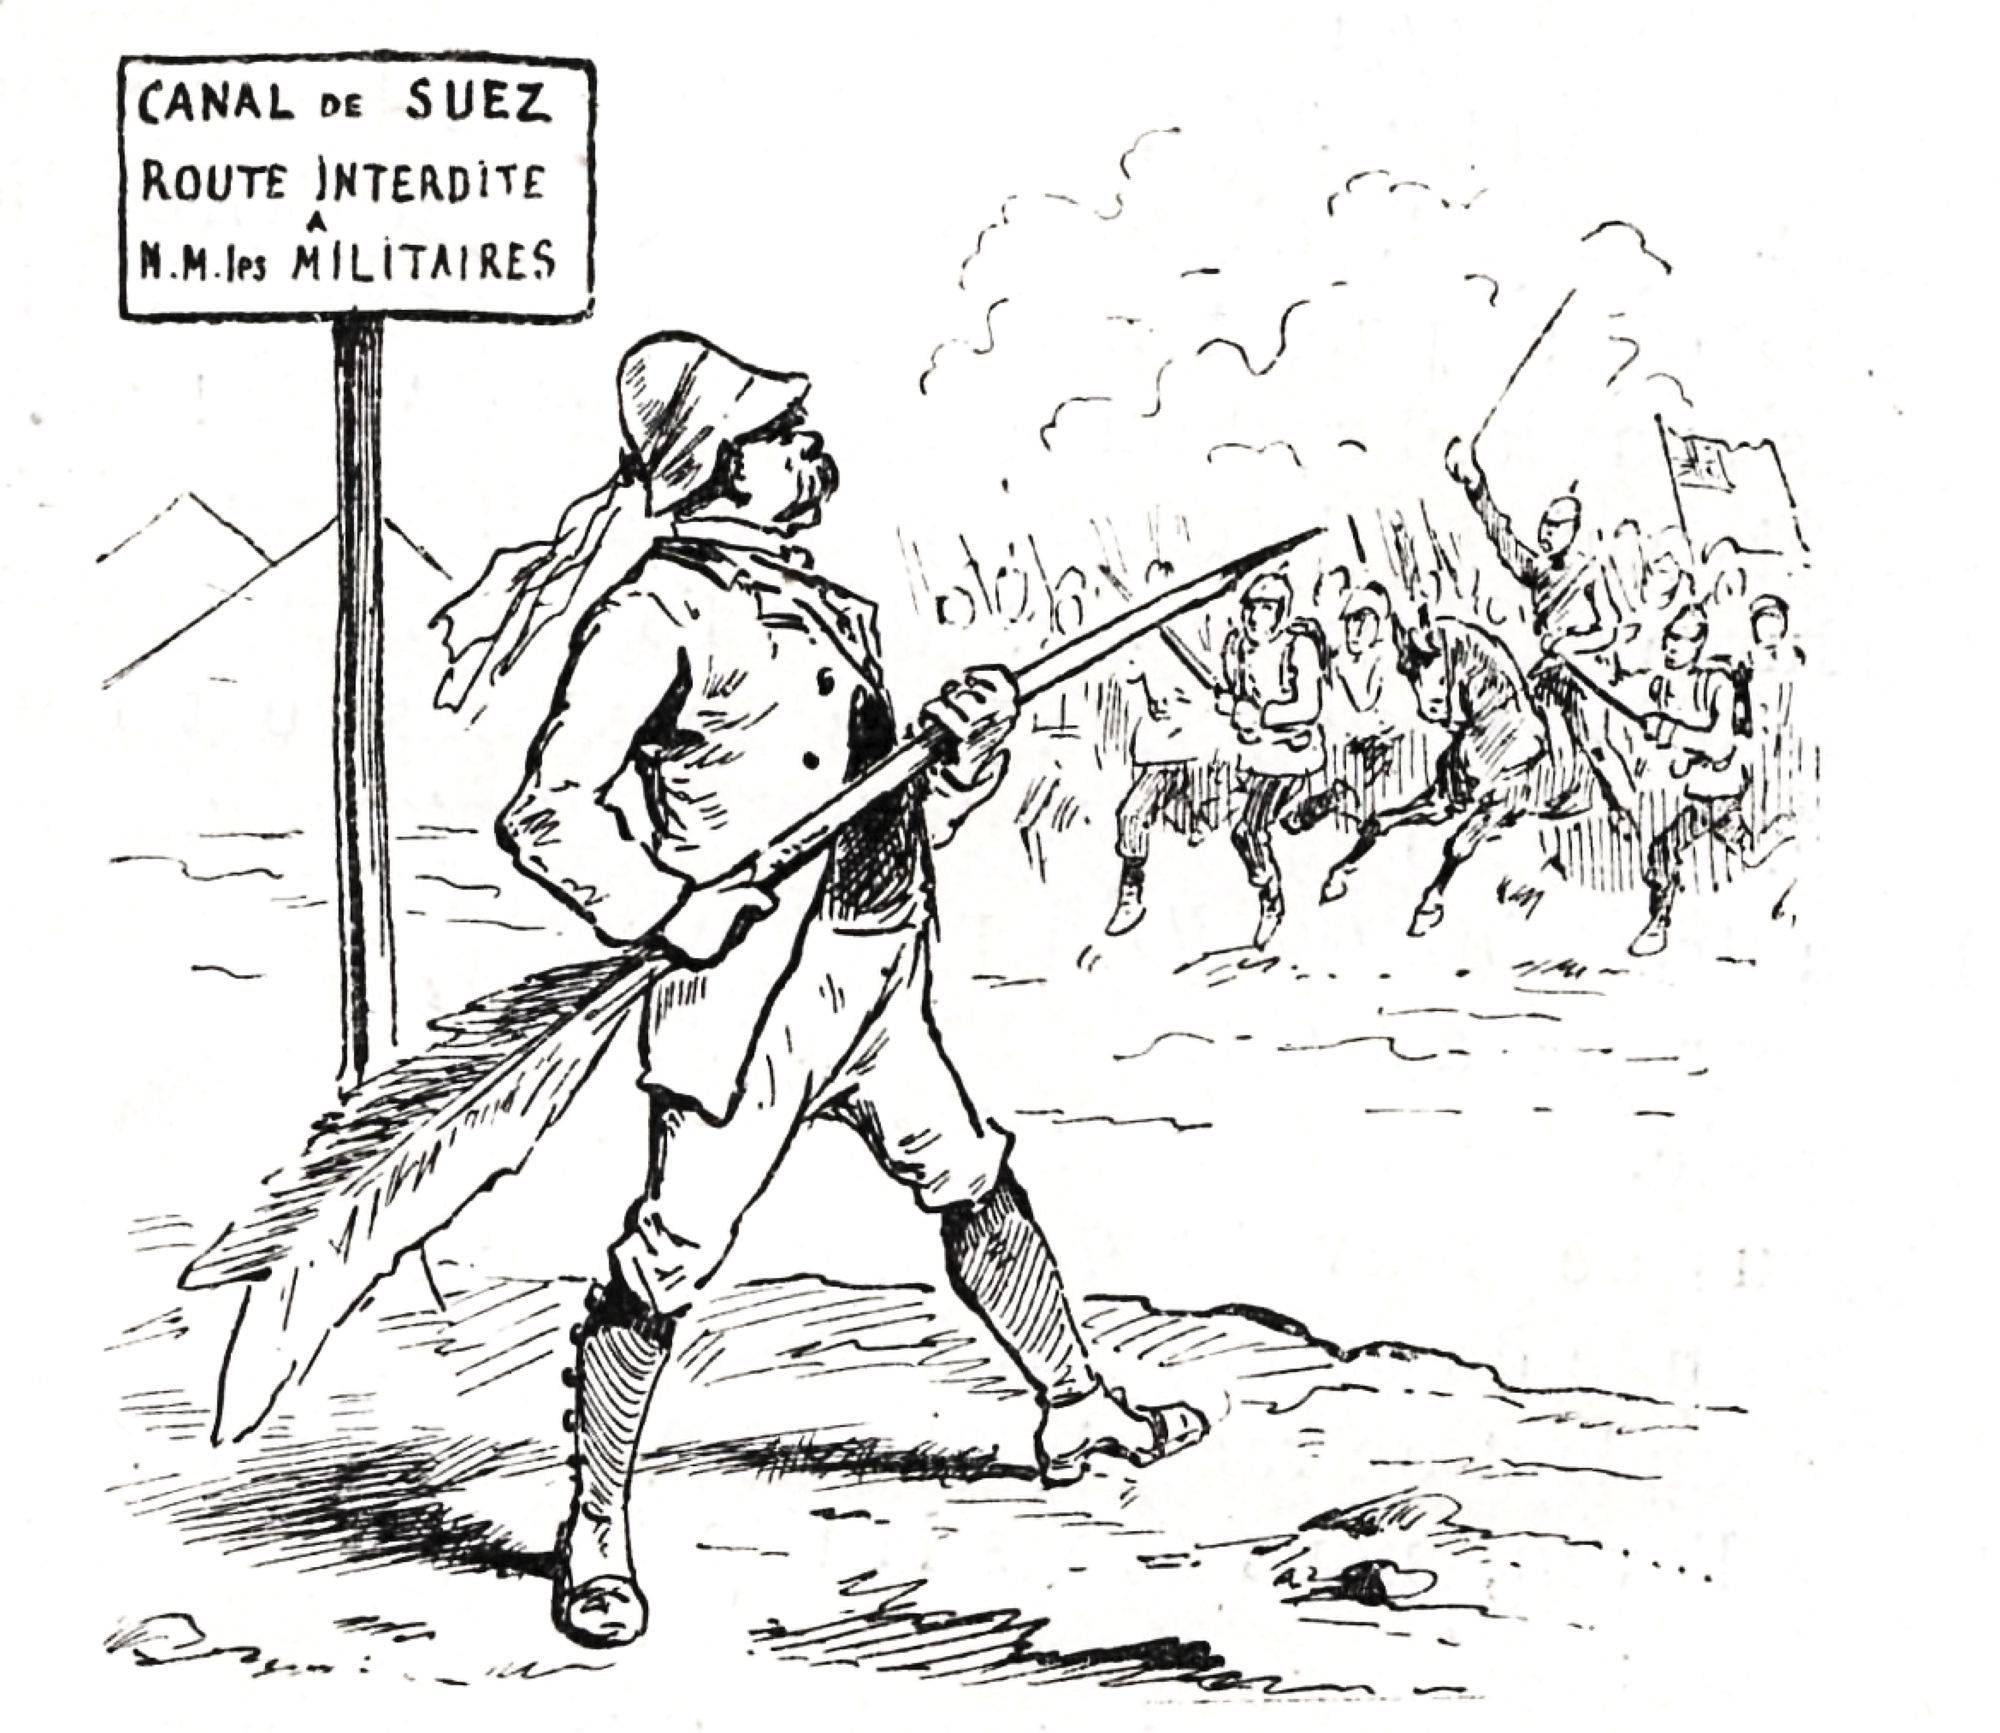 « M. F. de Lesseps défendant son canal – Lui seul, et c'est assez ! », Le Monde illustré, 1882 - source : Gallica-BnF